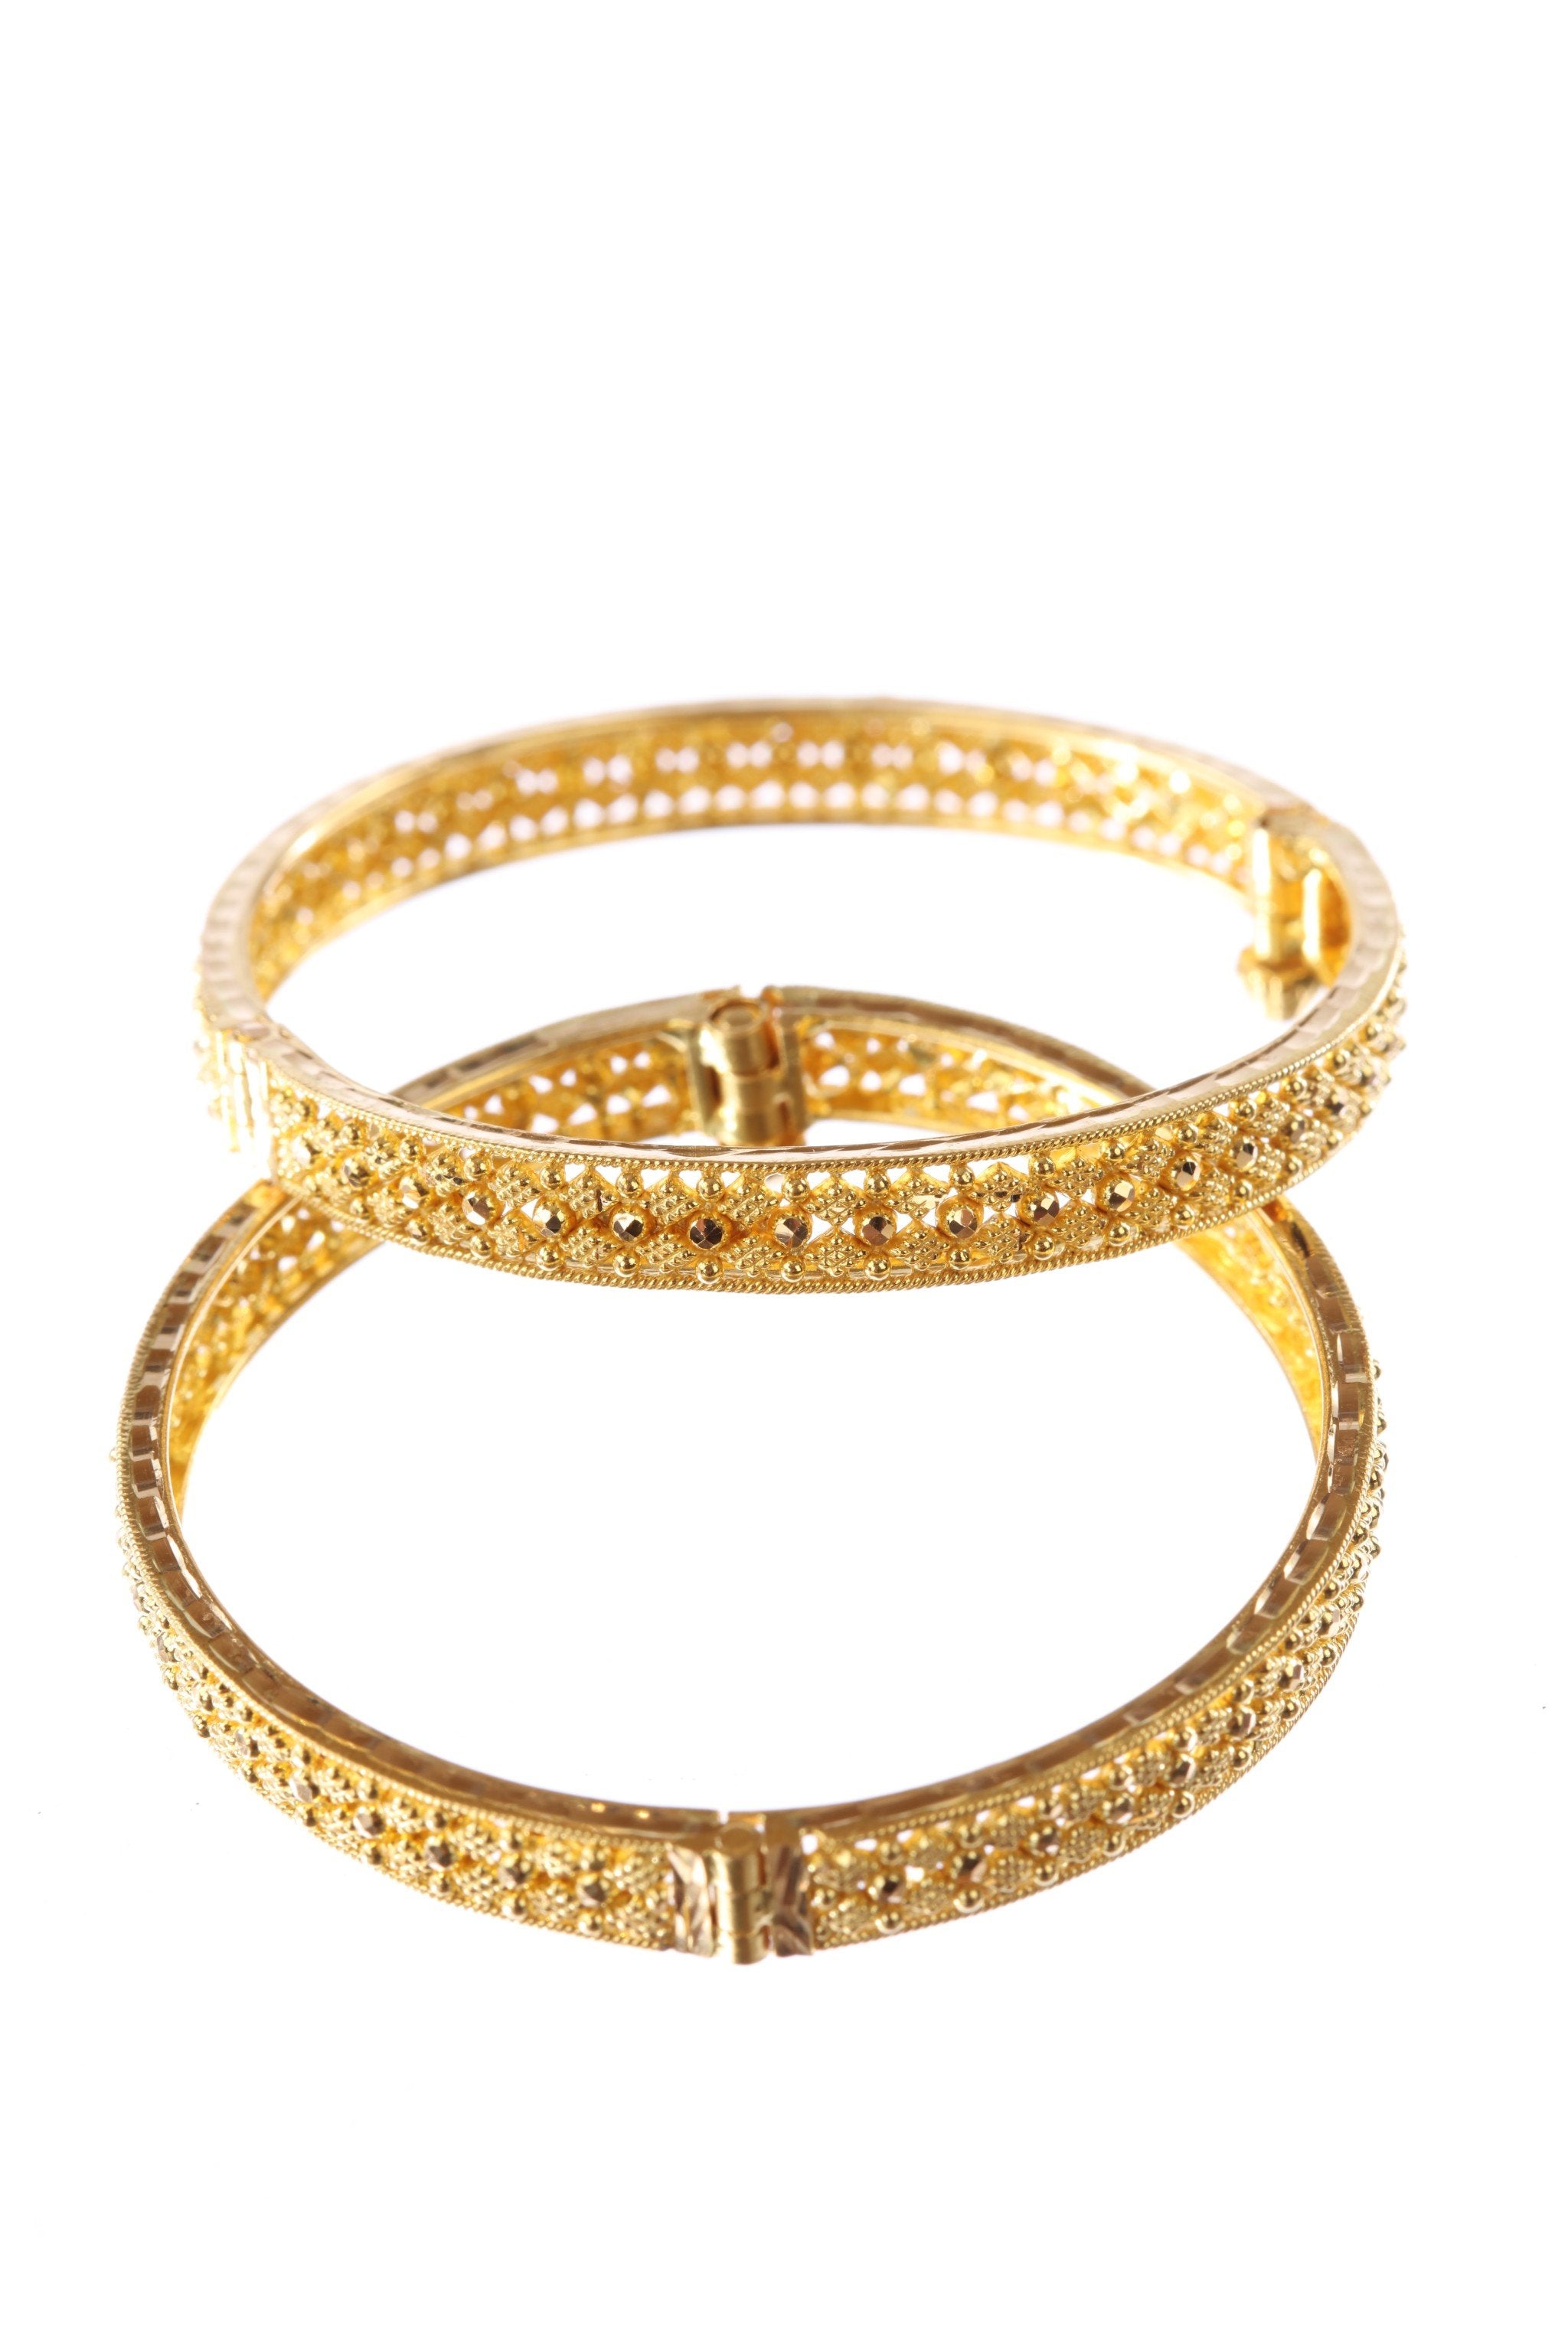 Buy Malabar Gold Bangle BG0906811 for Women Online | Malabar Gold & Diamonds